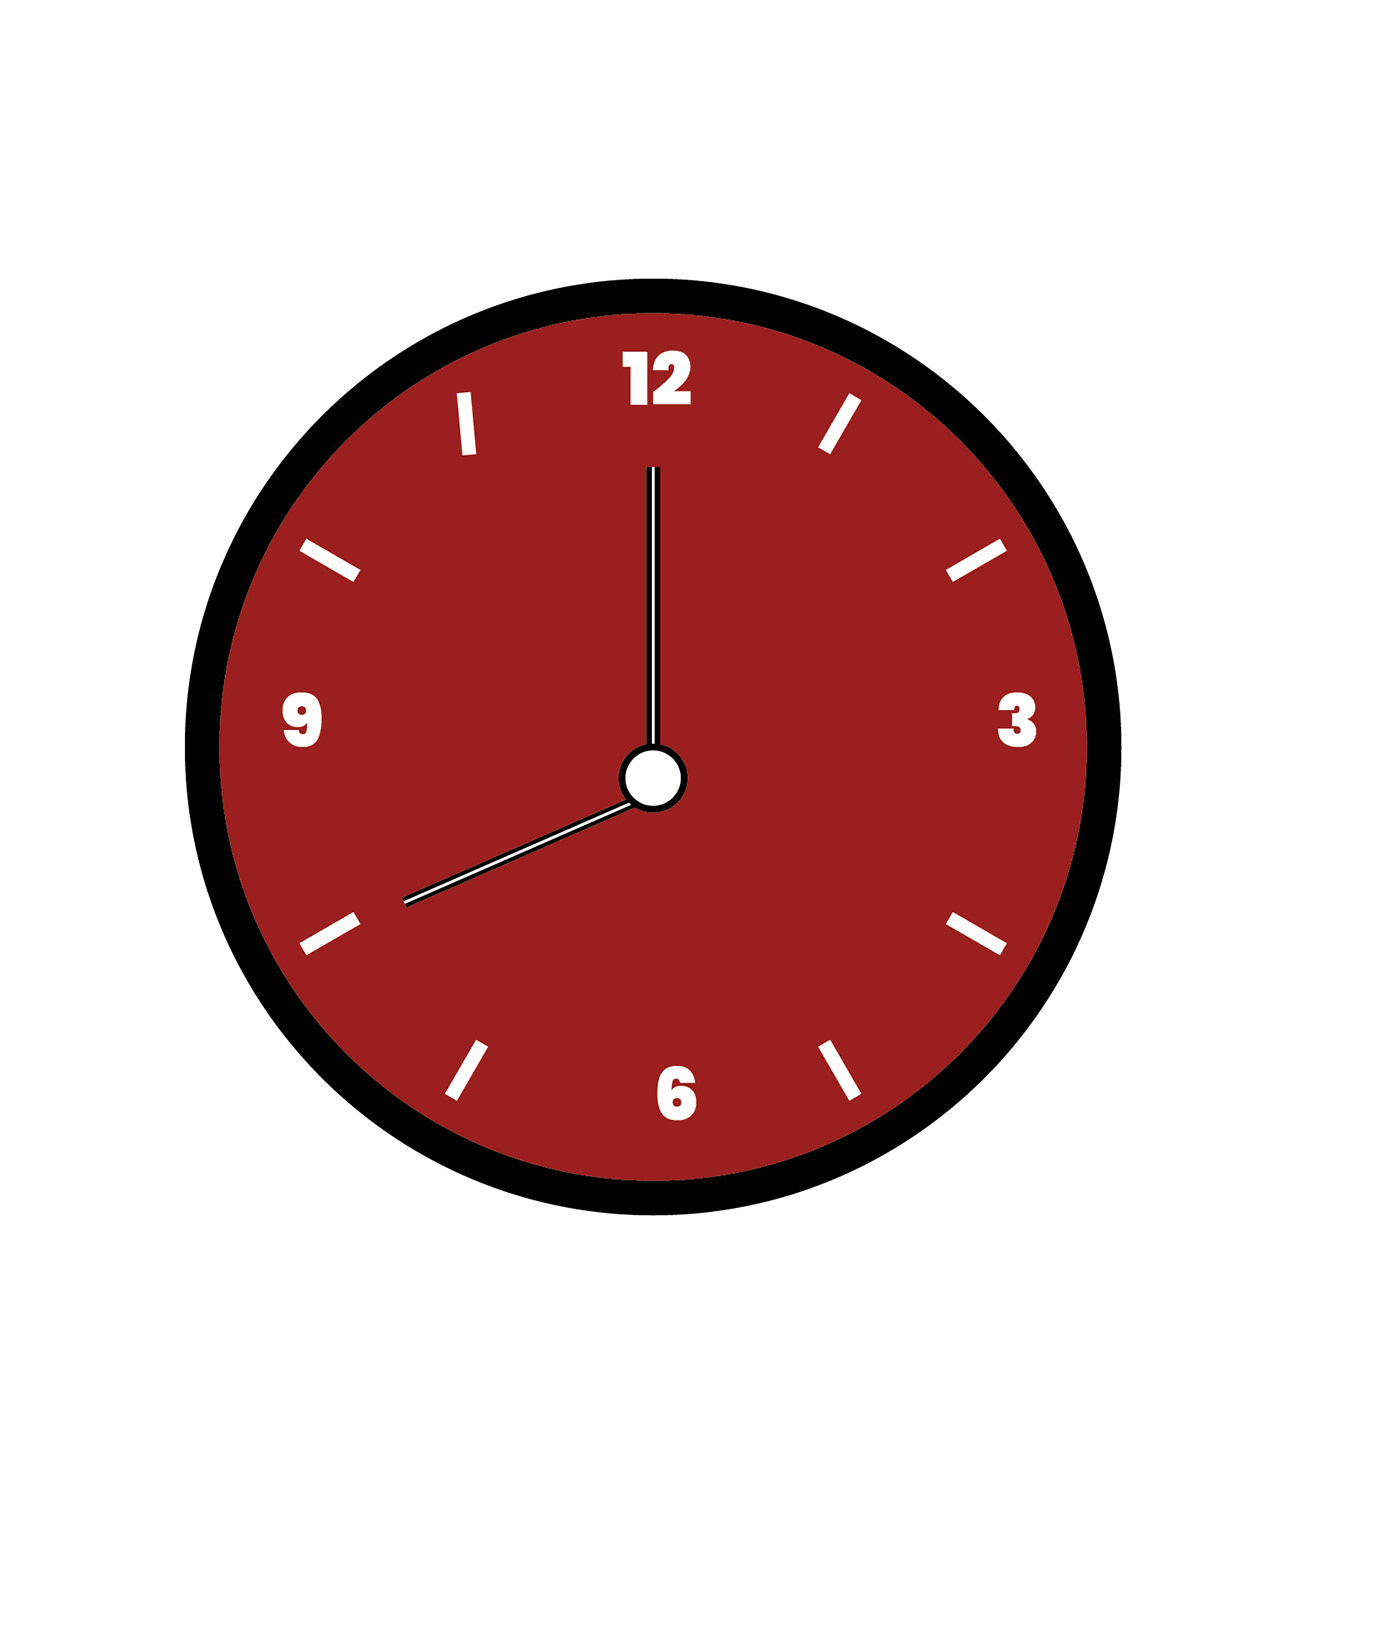 design clock vector Graphic Designer adobe illustrator designer graphic clocks wall clock time